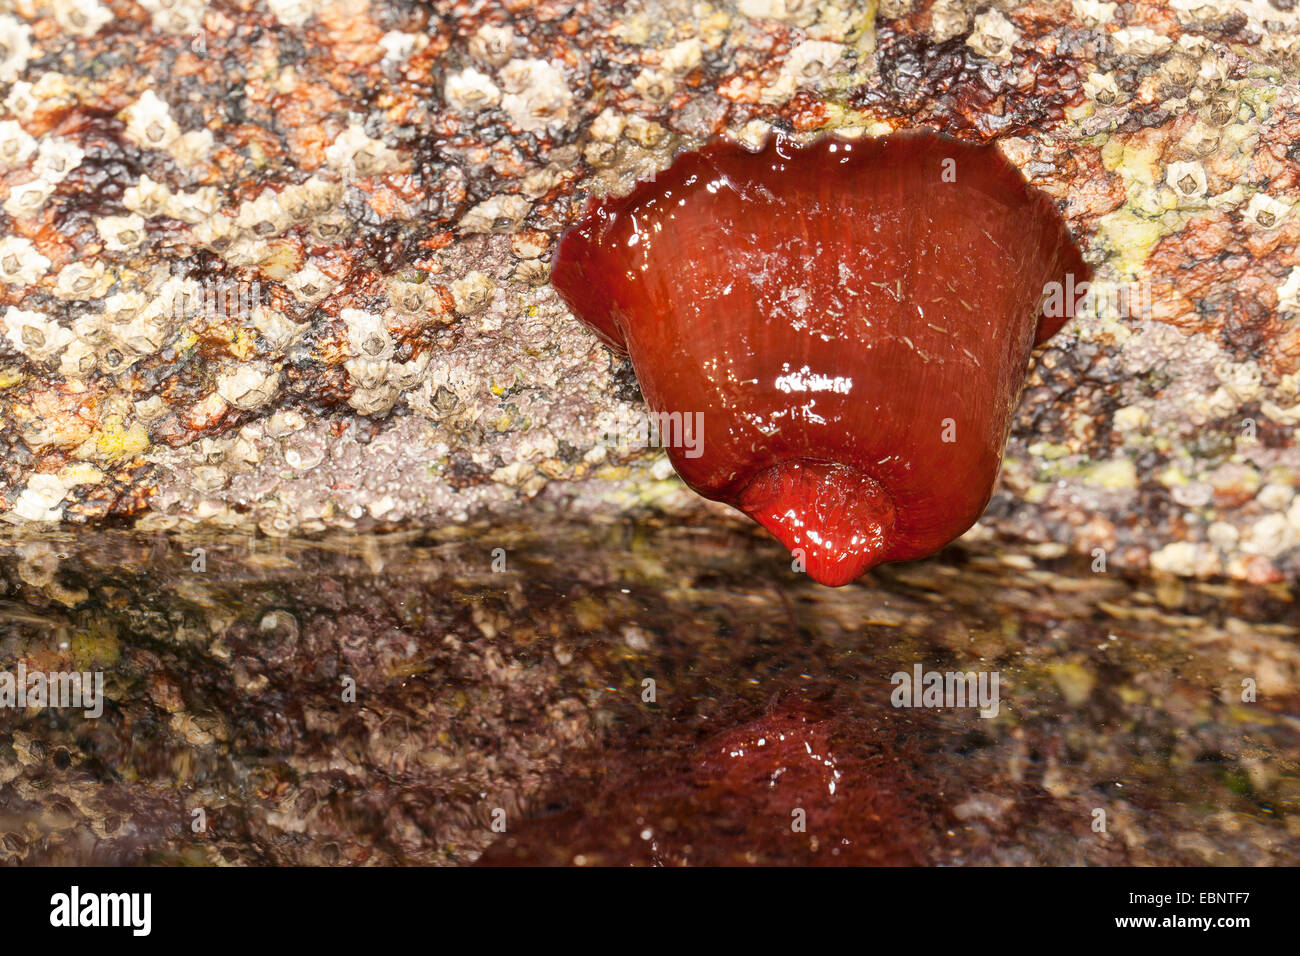 Mikrokügelchen Anemone, rote Seeanemone, Pflaume Anemone, Mikrokügelchen-Anemone (Actinia Equina), fühlte sich trocken an den niedrigen Gezeiten, Deutschland Stockfoto